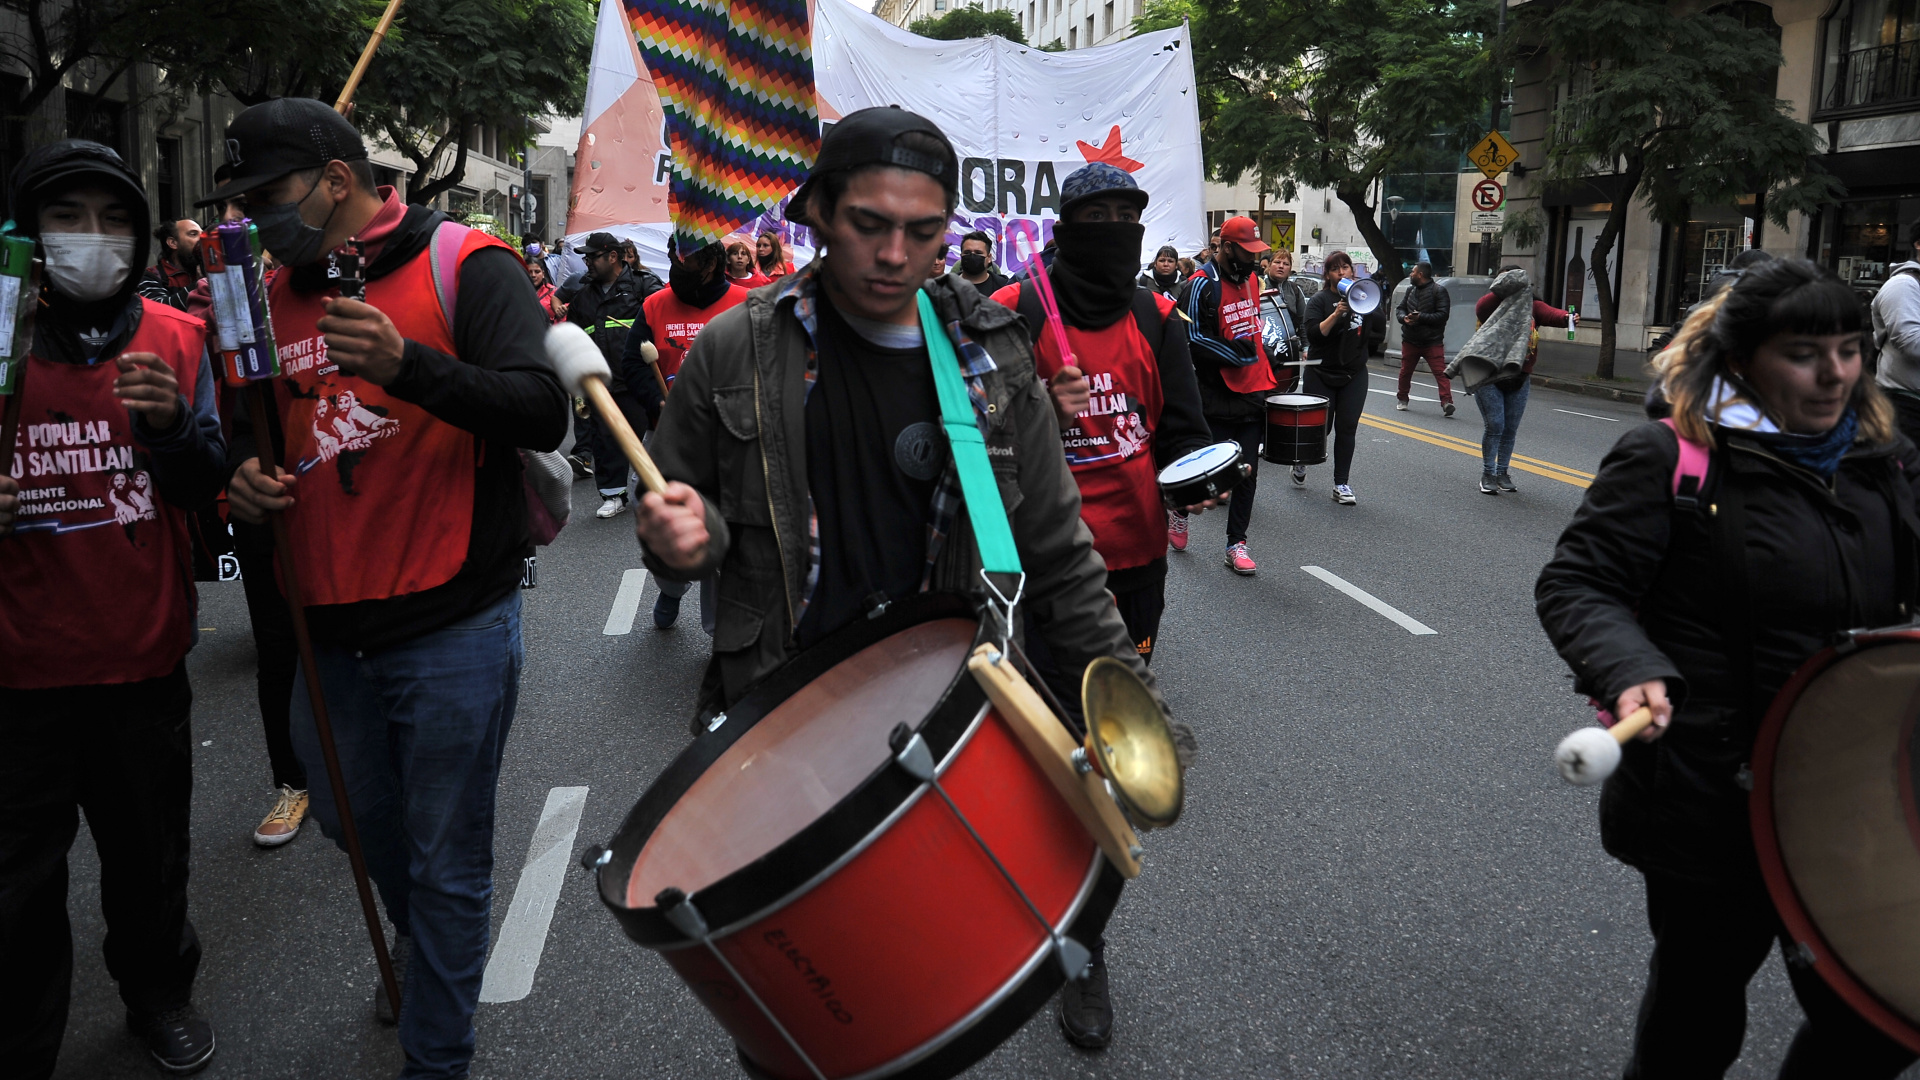 El secretario de Asuntos Parlamentarios de jefatura de Gabinete, Fernando “Chino” Navarro, se acercó a la movilización en la Plaza de Mayo y se mostró comprensivo con la marcha